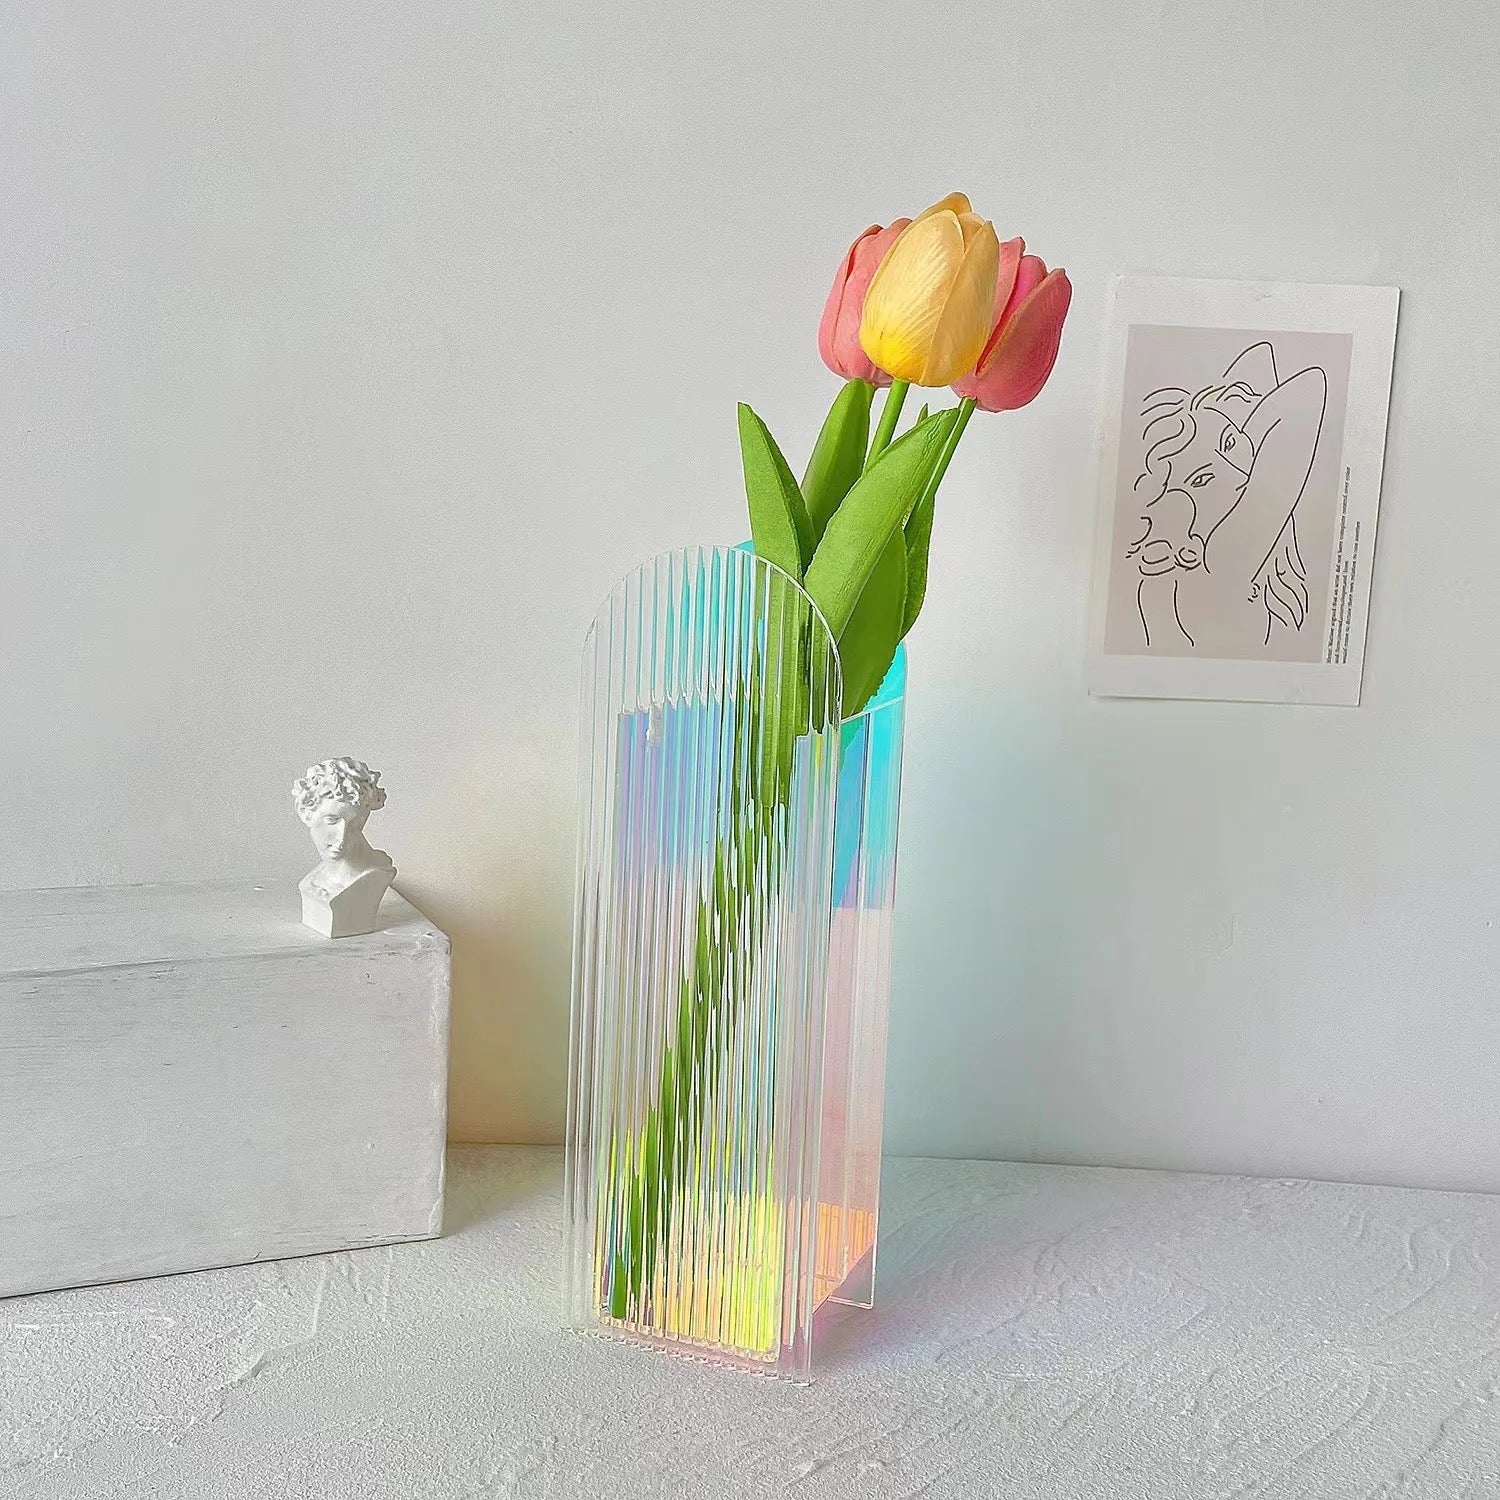 Acrylic rainbow decoration flowers Vases - SHAGHAF HOME